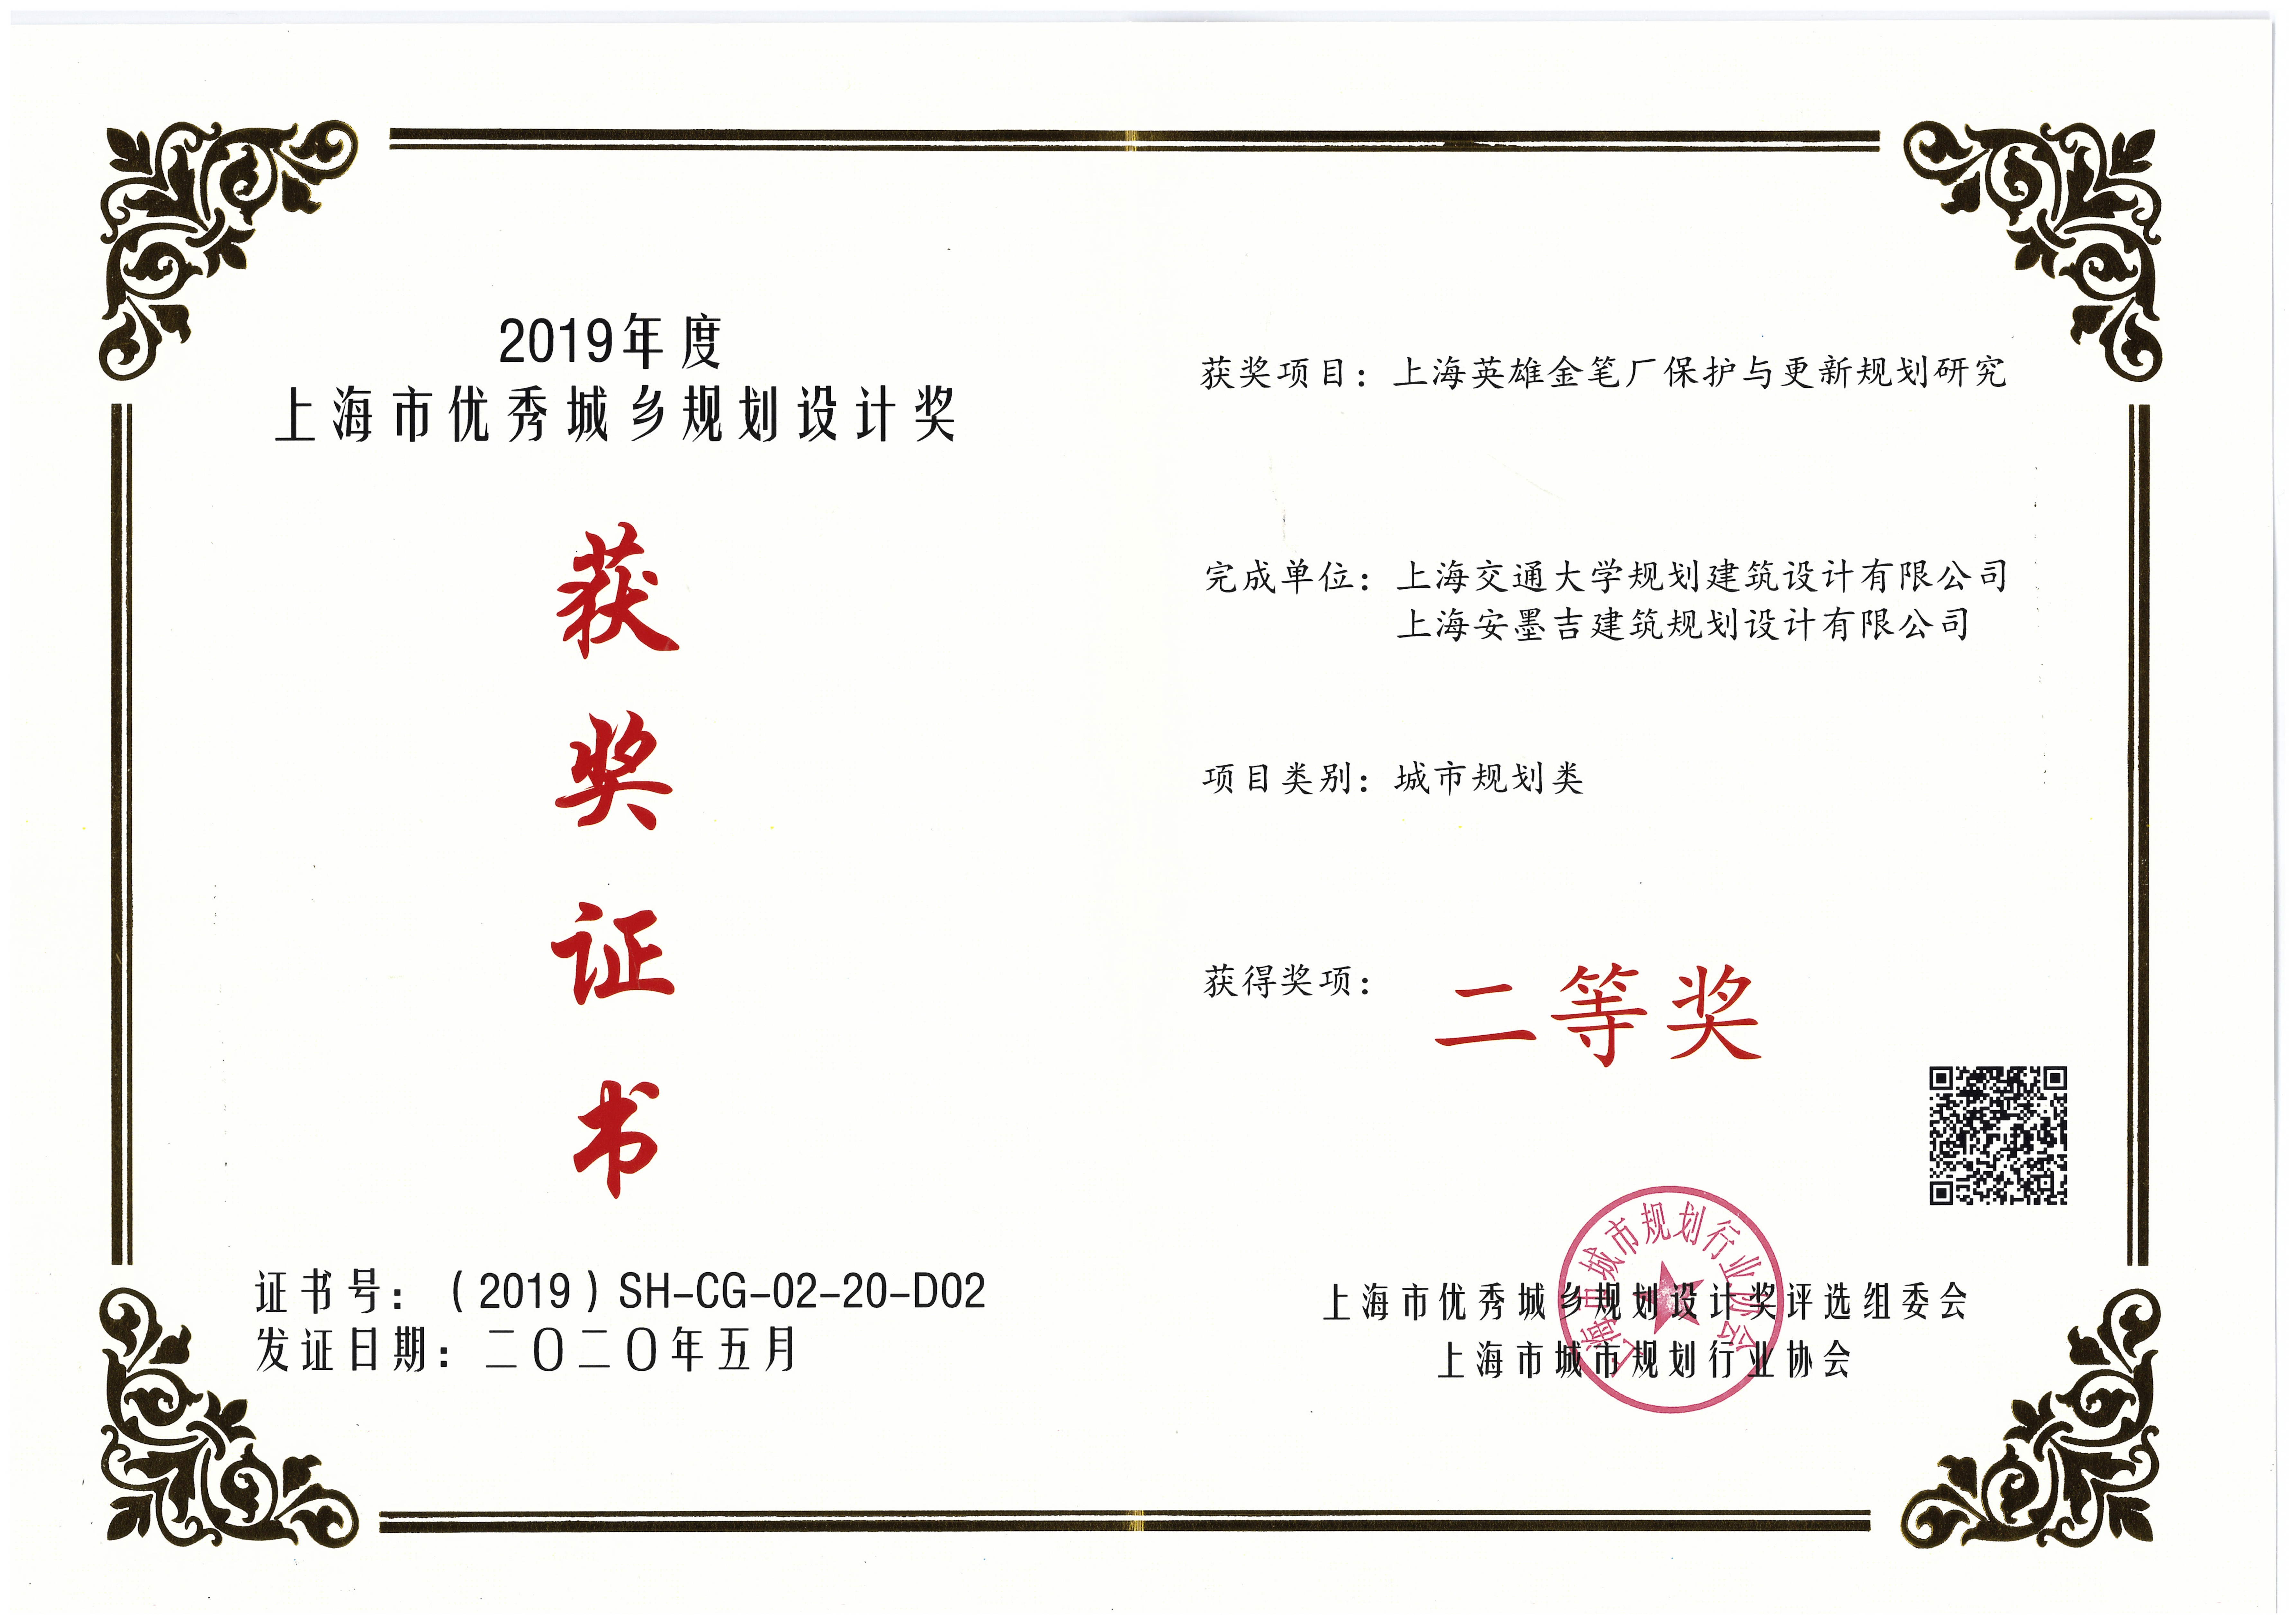 上海英雄金筆廠保護與更新規劃研究-上海二等獎單位證書.jpg